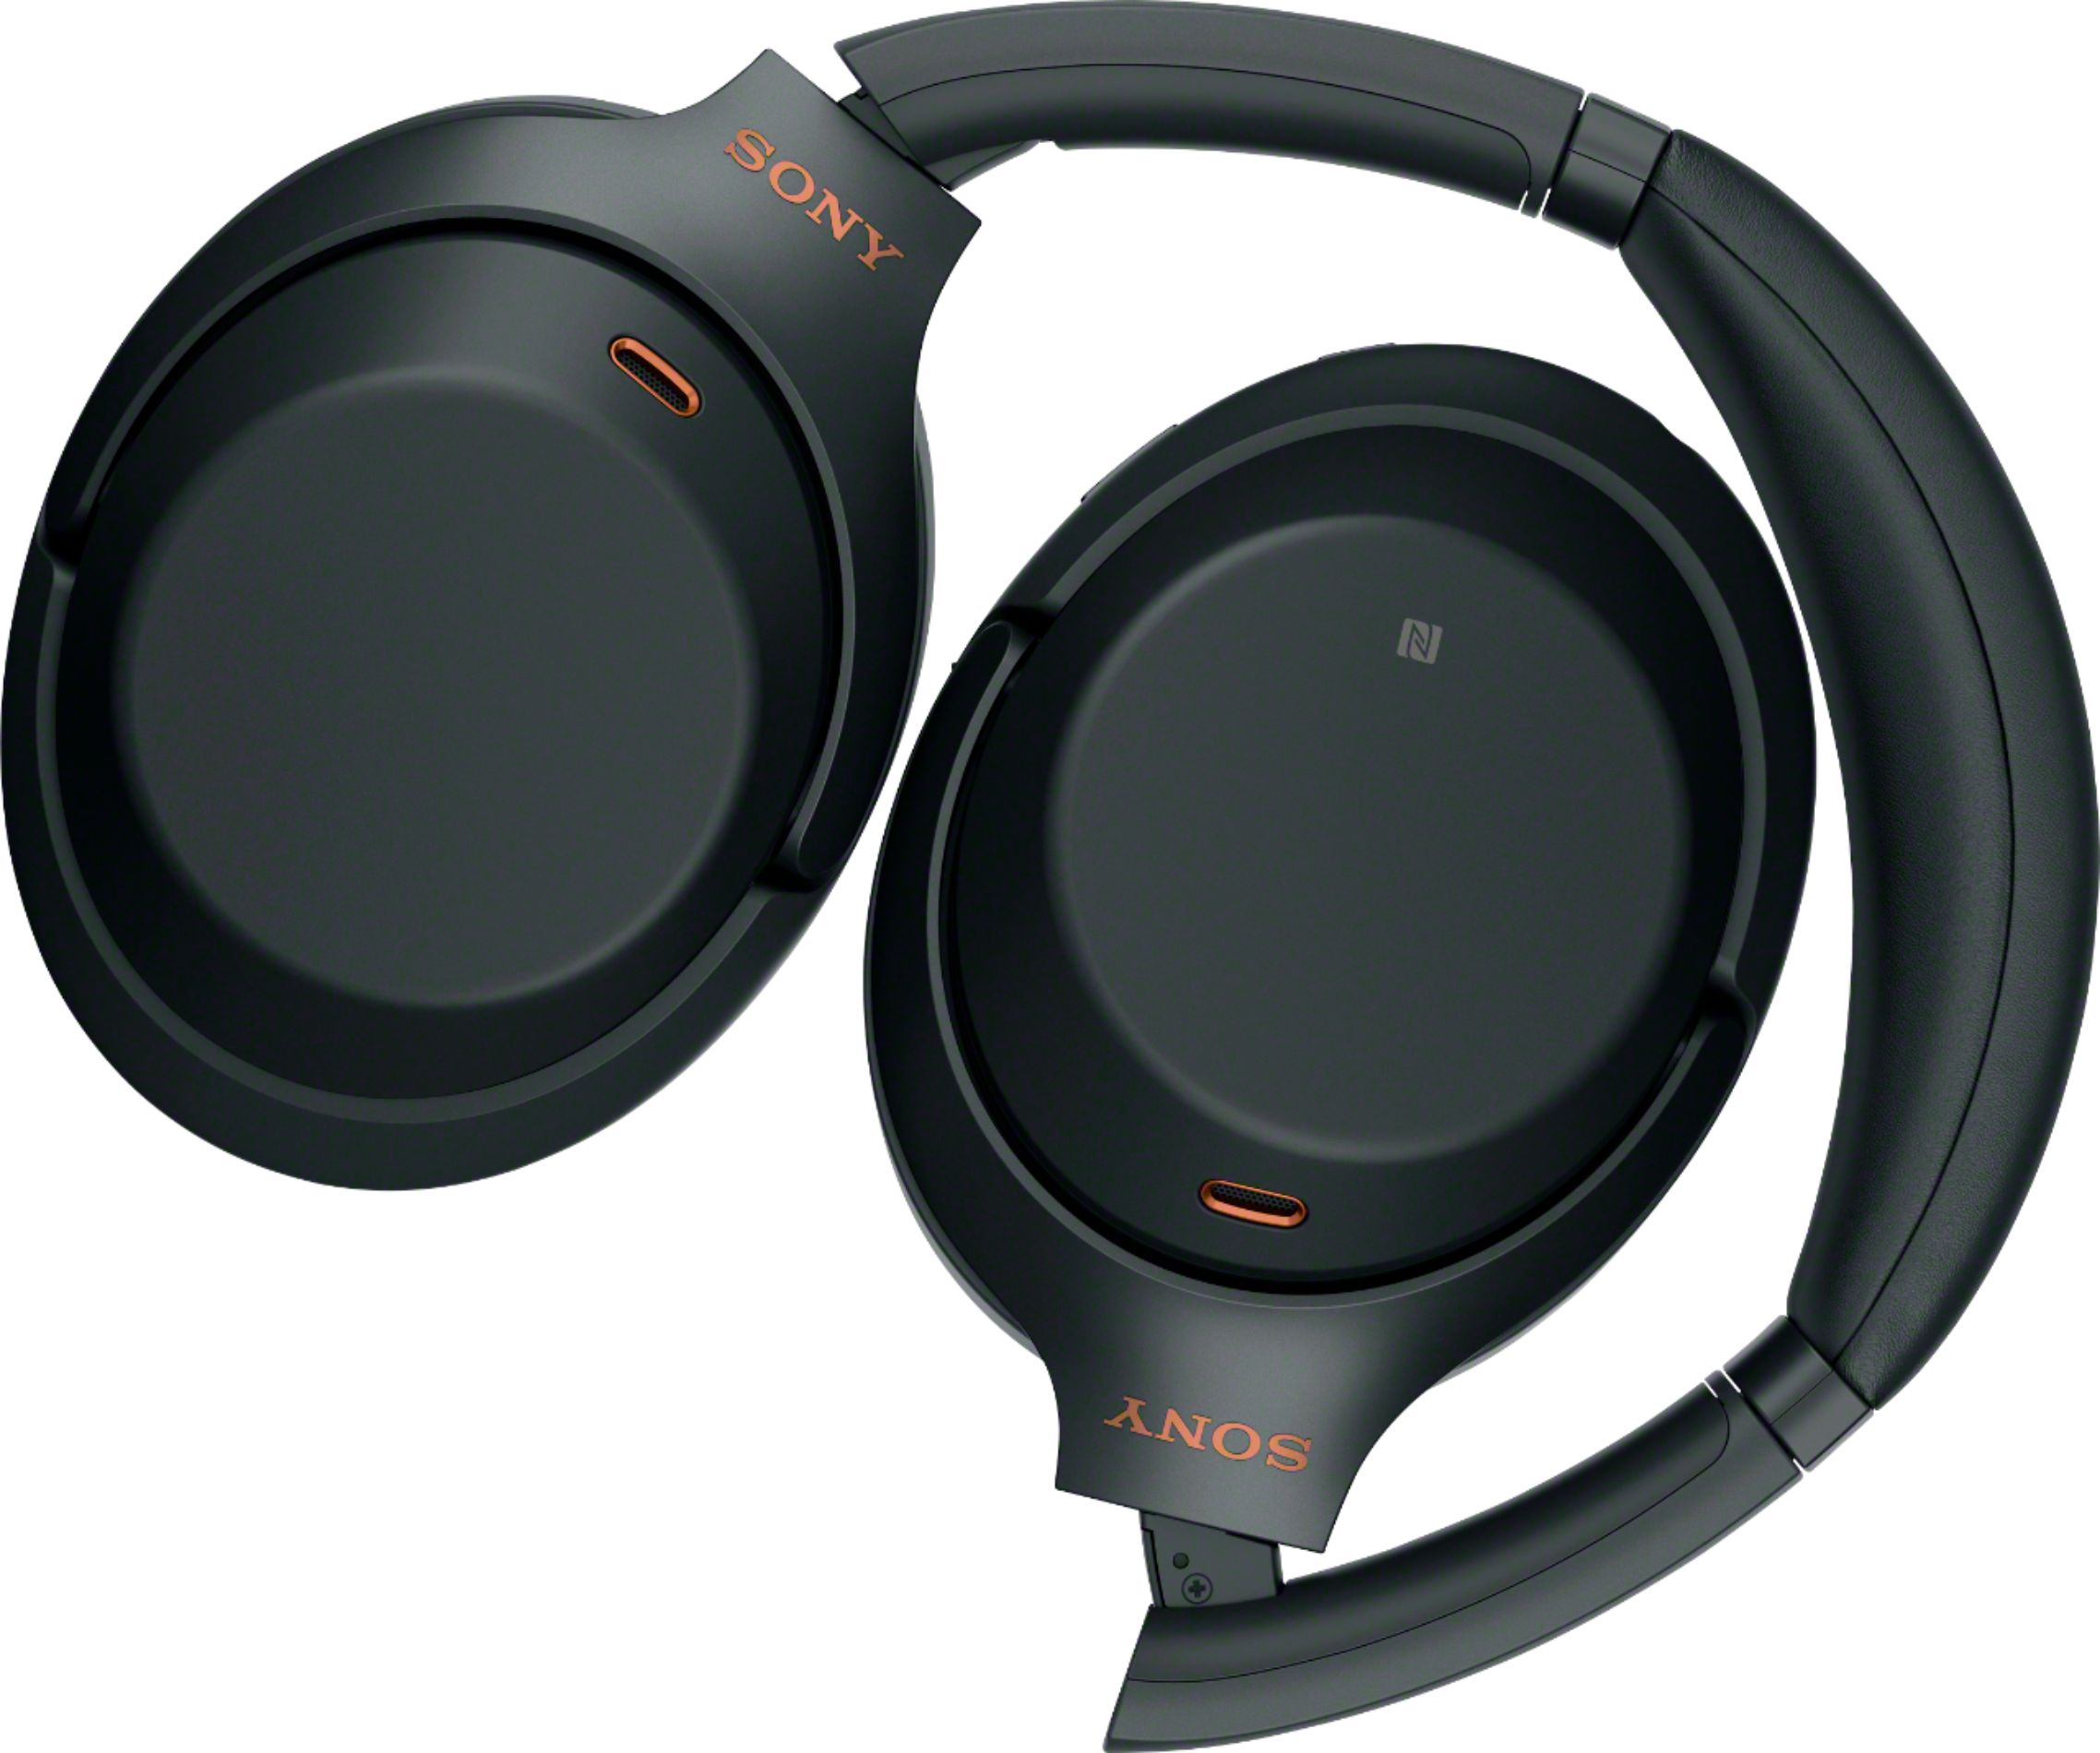 オーディオ機器 ヘッドフォン Best Buy: Sony WH-1000XM3 Wireless Noise Cancelling Over-the-Ear 